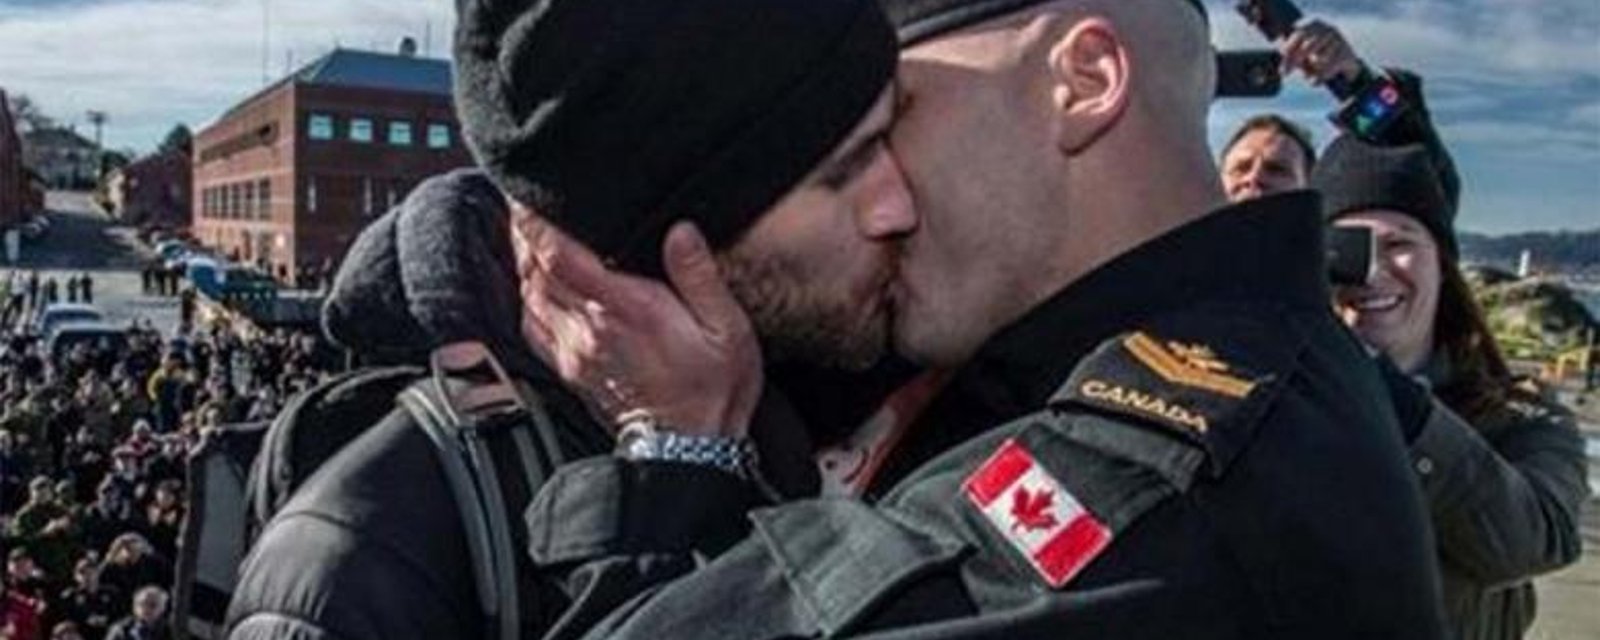 La réaction des Forces Armées Canadiennes à cette photo fait le tour du monde!